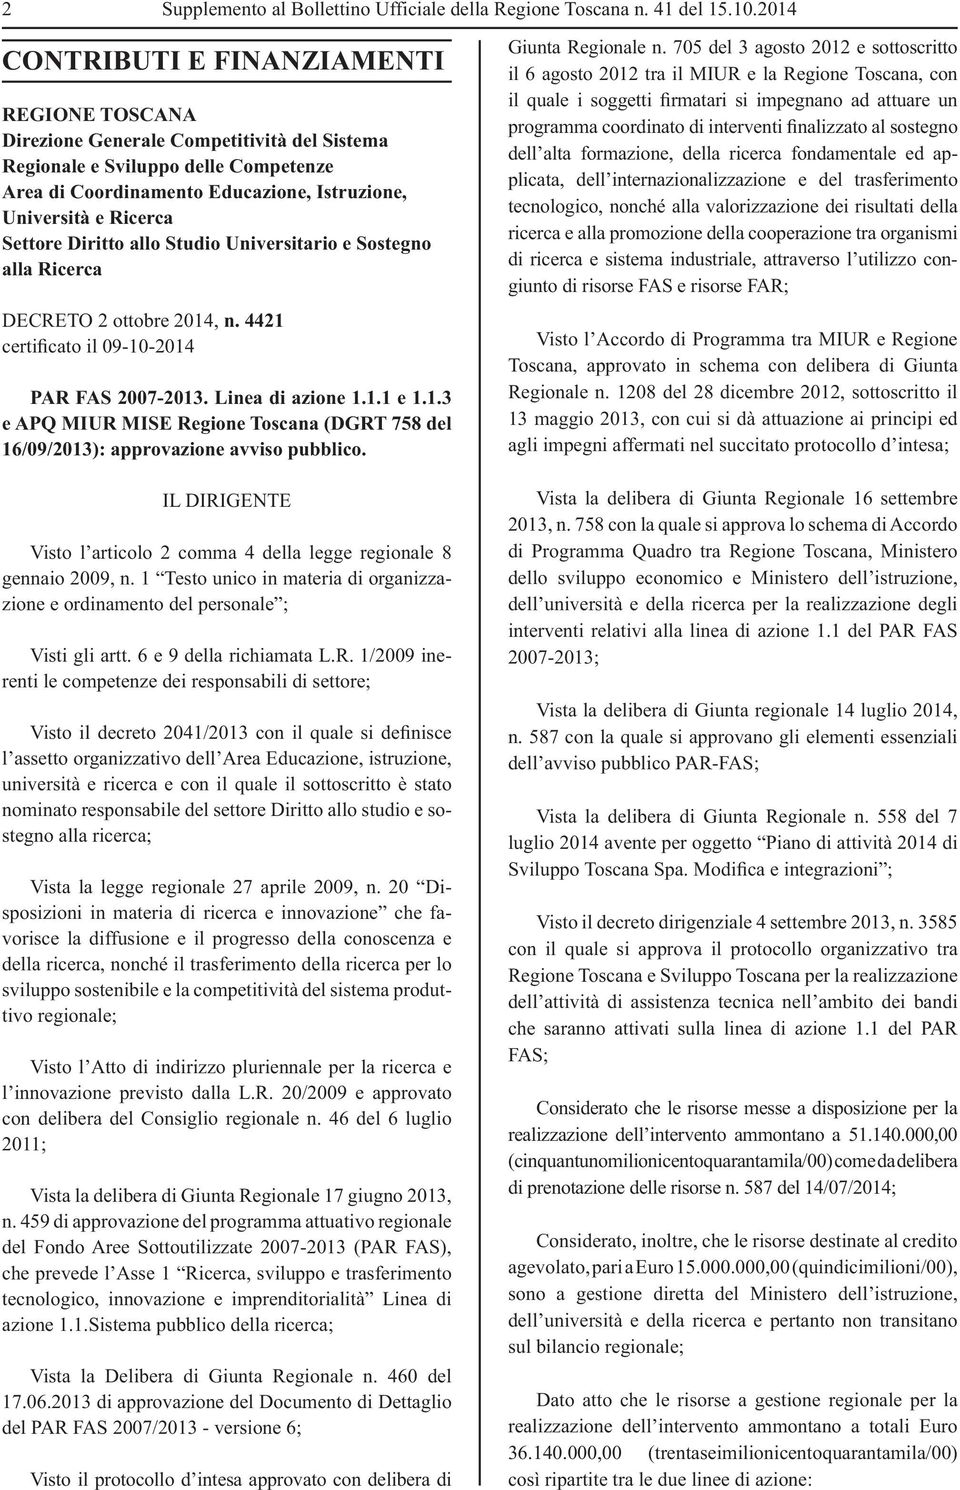 Settore Diritto allo Studio Universitario e Sostegno alla Ricerca DECRETO 2 ottobre 2014, n. 4421 certificato il 09-10-2014 PAR FAS 2007-2013. Linea di azione 1.1.1 e 1.1.3 e APQ MIUR MISE Regione Toscana (DGRT 758 del 16/09/2013): approvazione avviso pubblico.